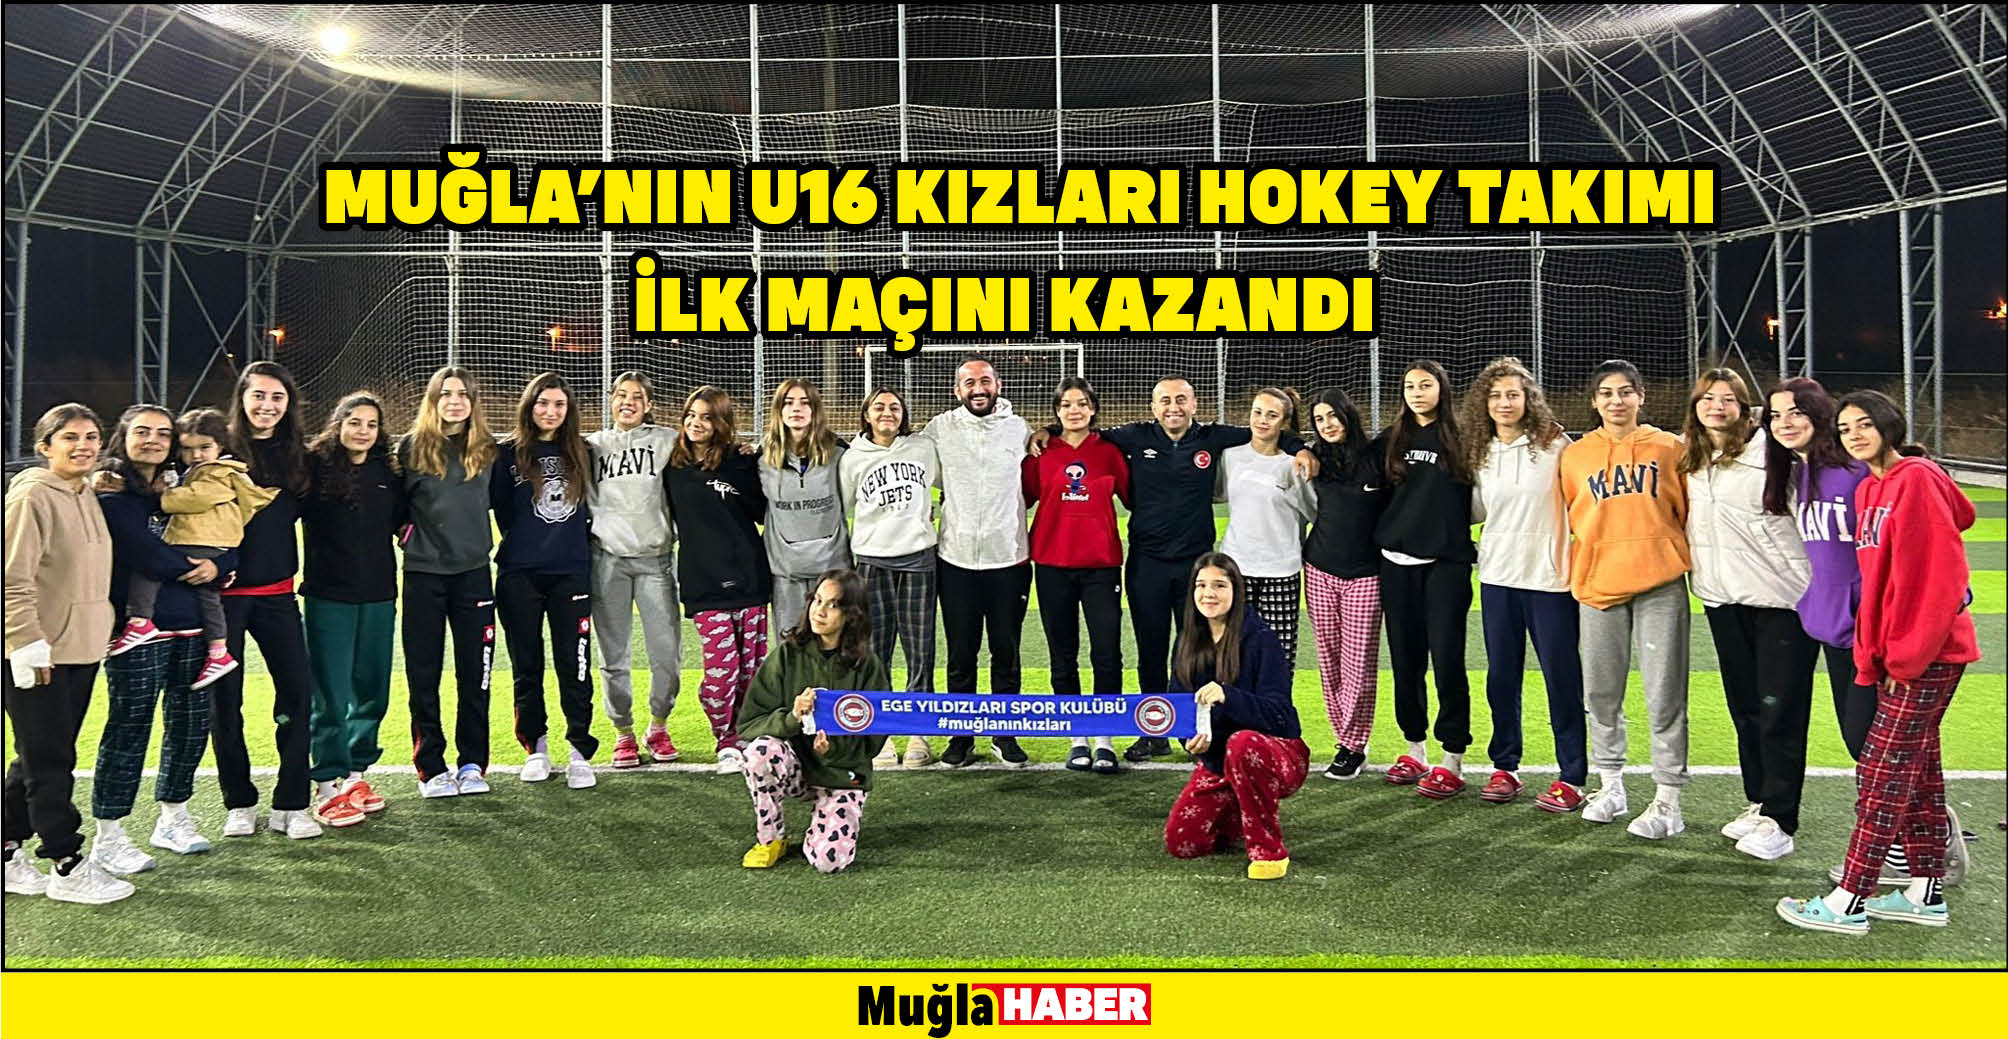 Muğla’nın U16 kızları Hokey takımı ilk maçını kazandı